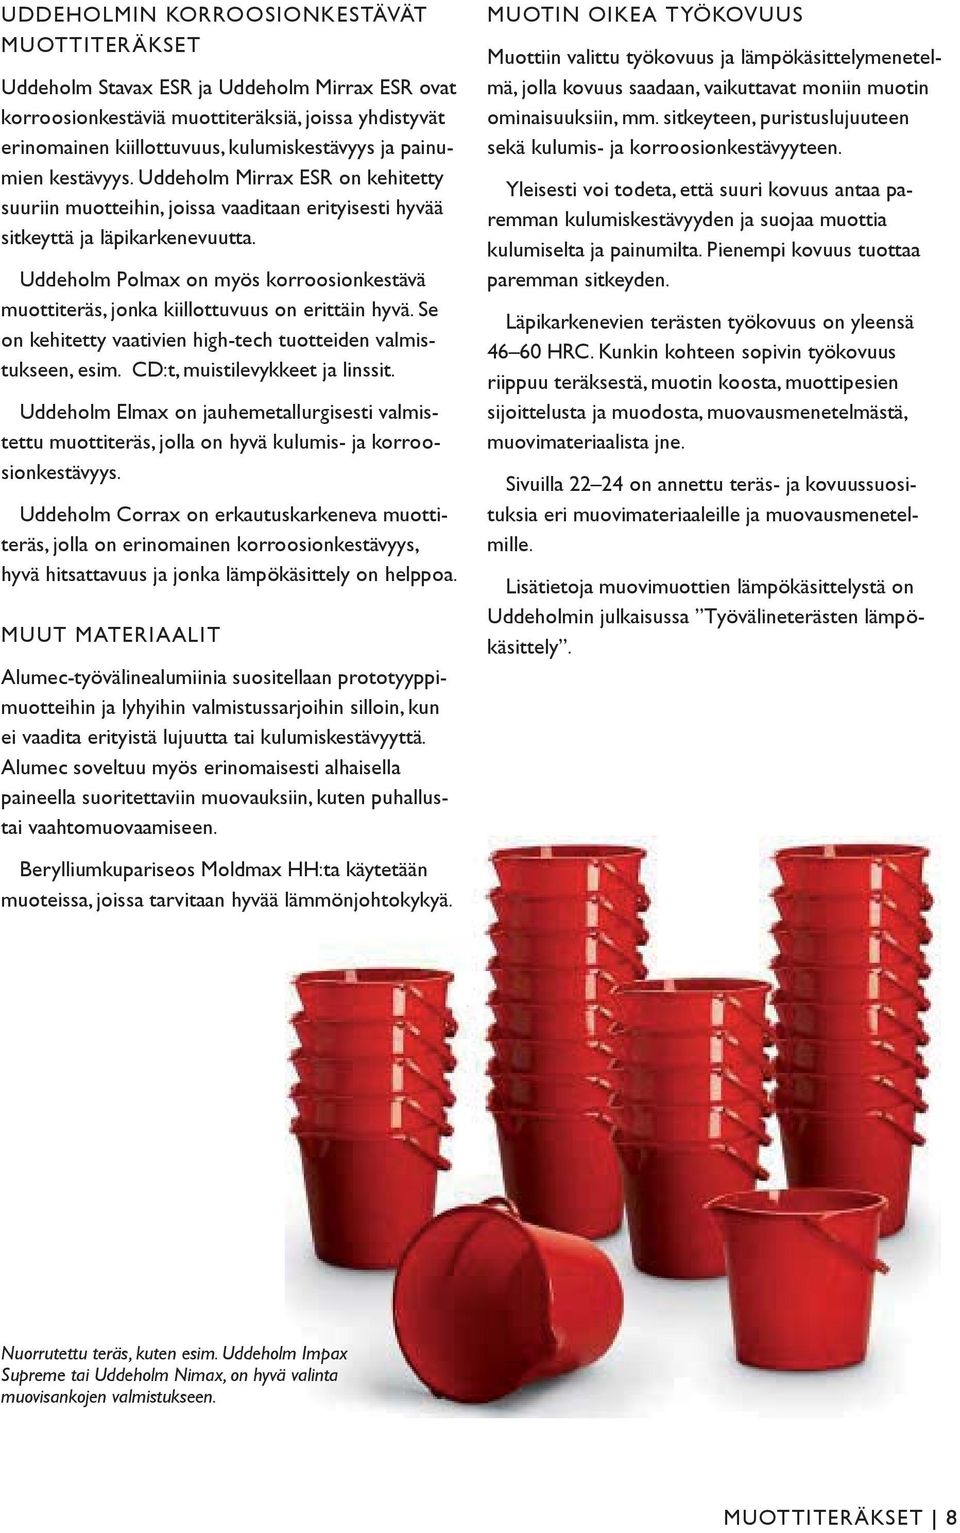 Uddeholm Polmax on myös korroosionkestävä muottiteräs, jonka kiillottuvuus on erittäin hyvä. Se on kehitetty vaativien high-tech tuotteiden valmistukseen, esim. CD:t, muistilevykkeet ja linssit.